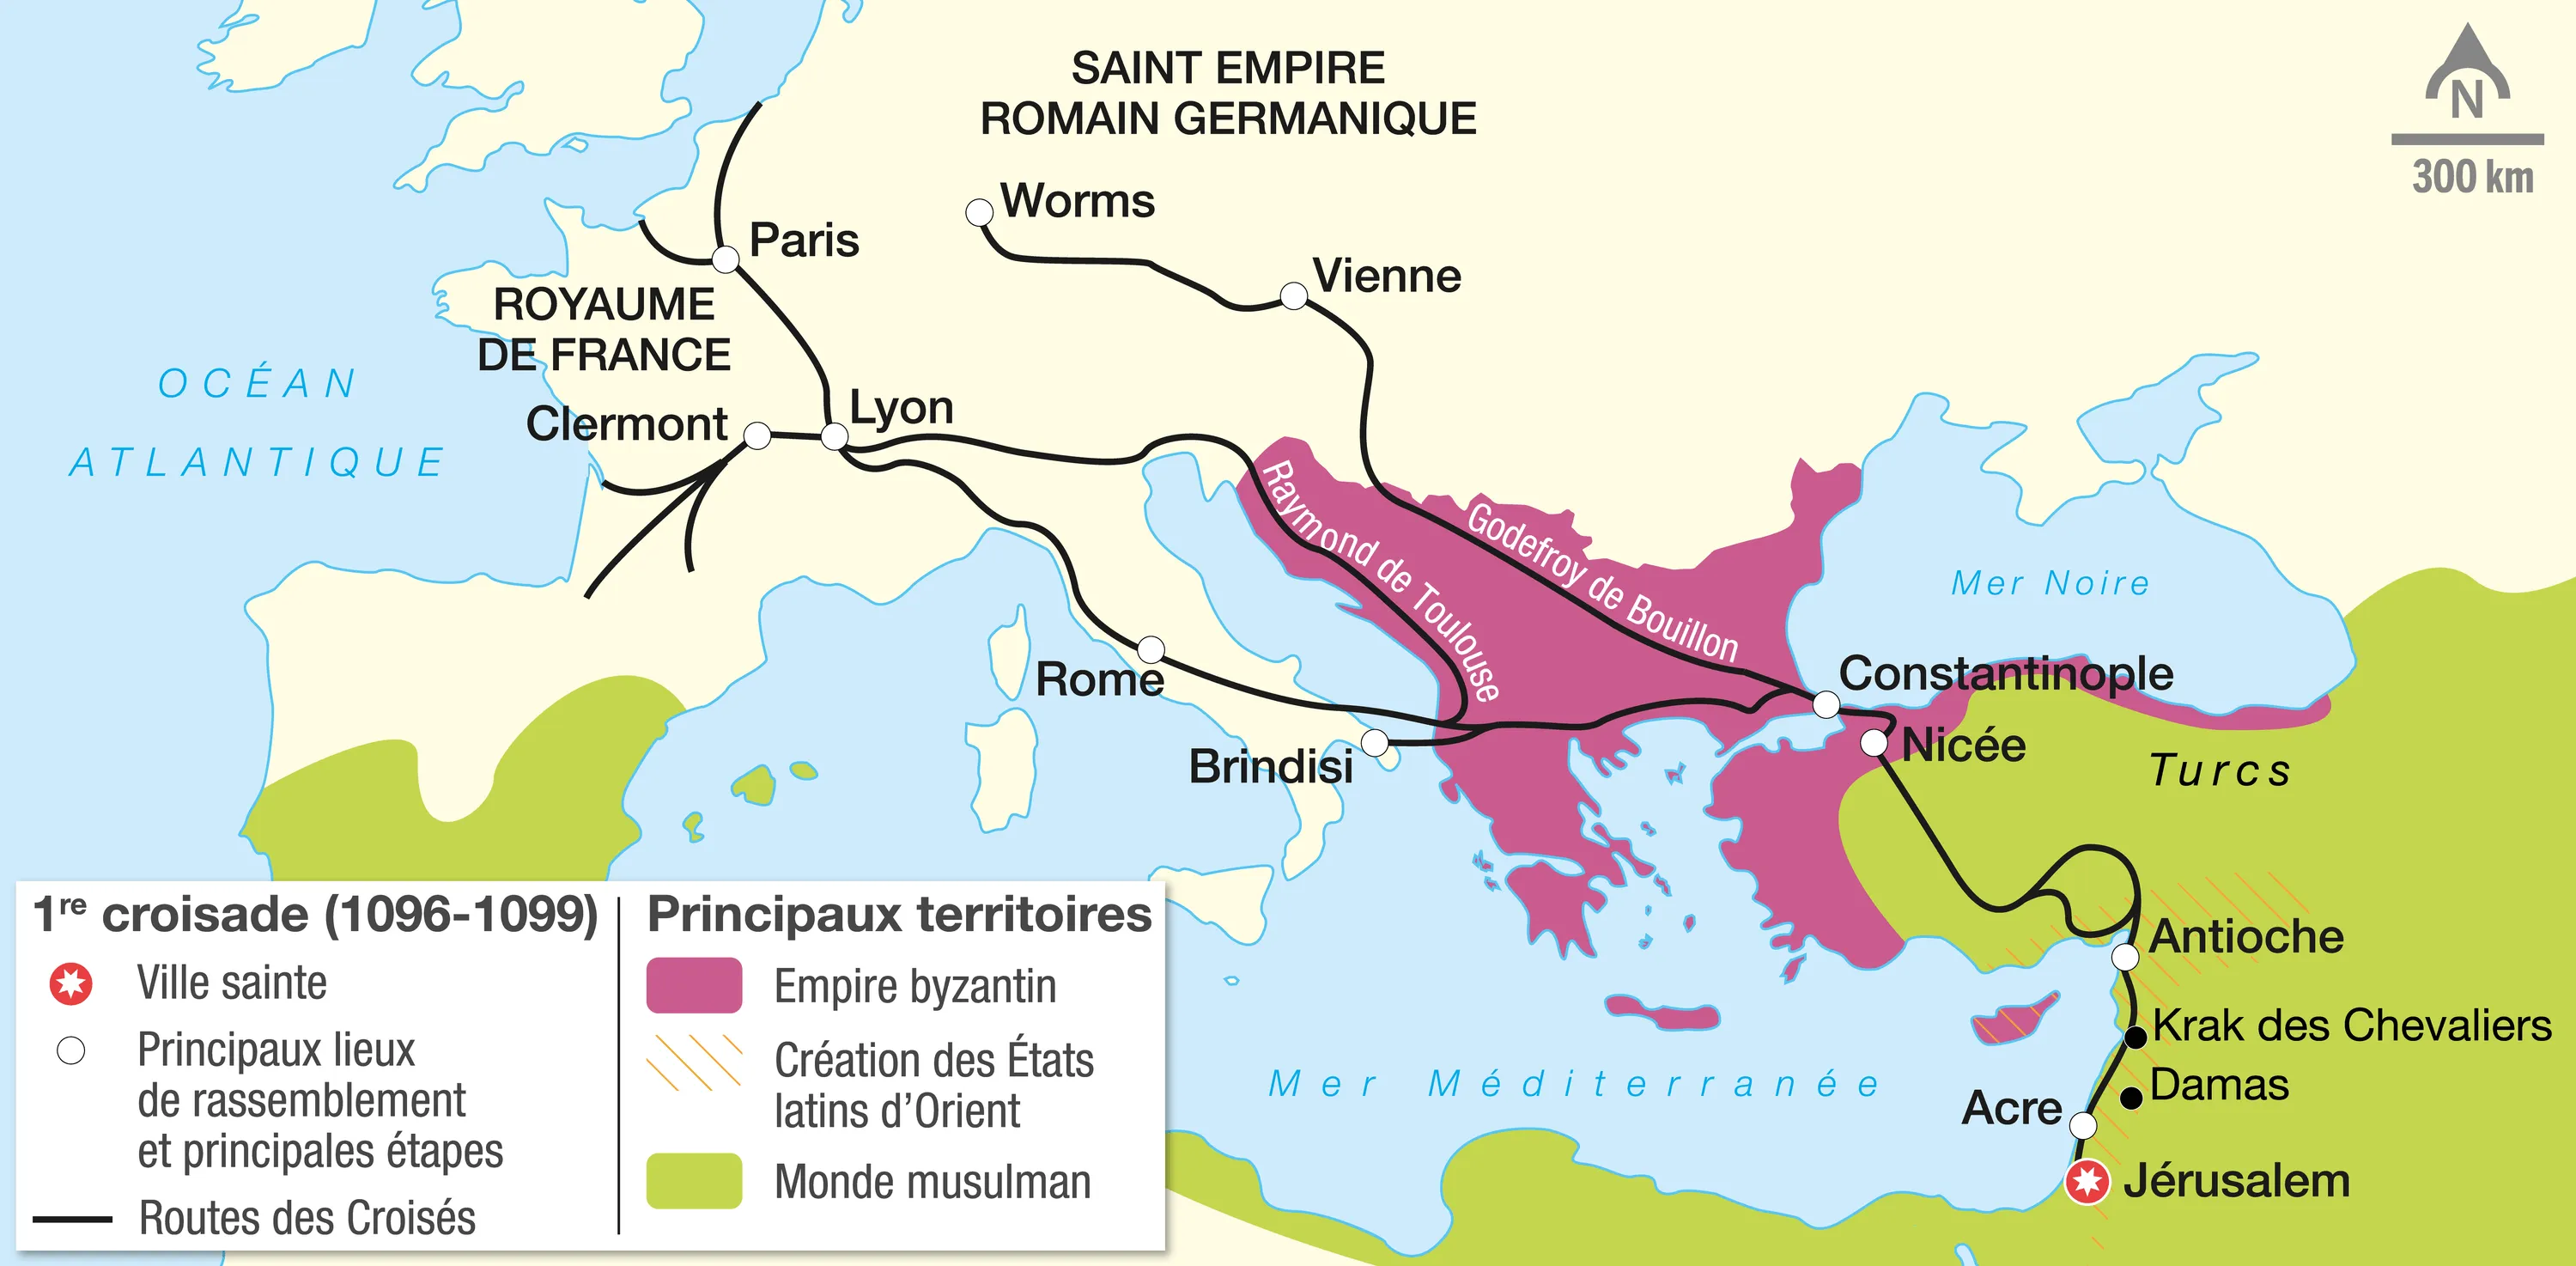 Le parcours de la première croisade (1096-1099)